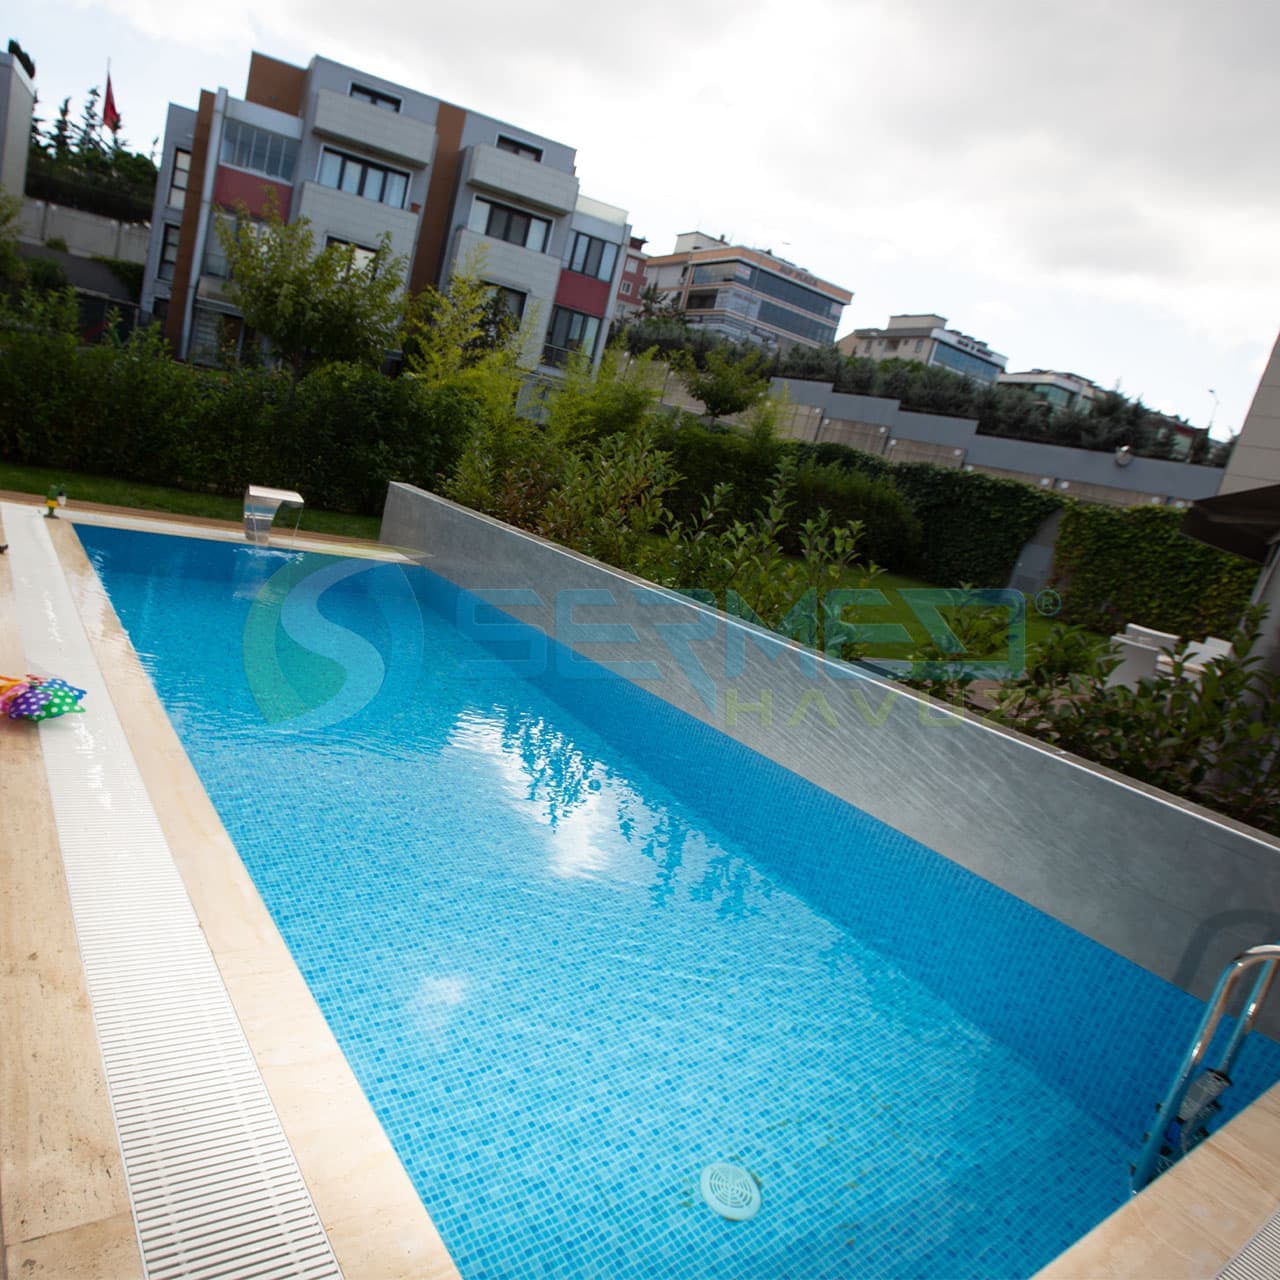 İstanbul'da Lagün Fipool Taşmalı Panel Havuz uygulaması Sermed Havuz Firması tarafından yapıldı.